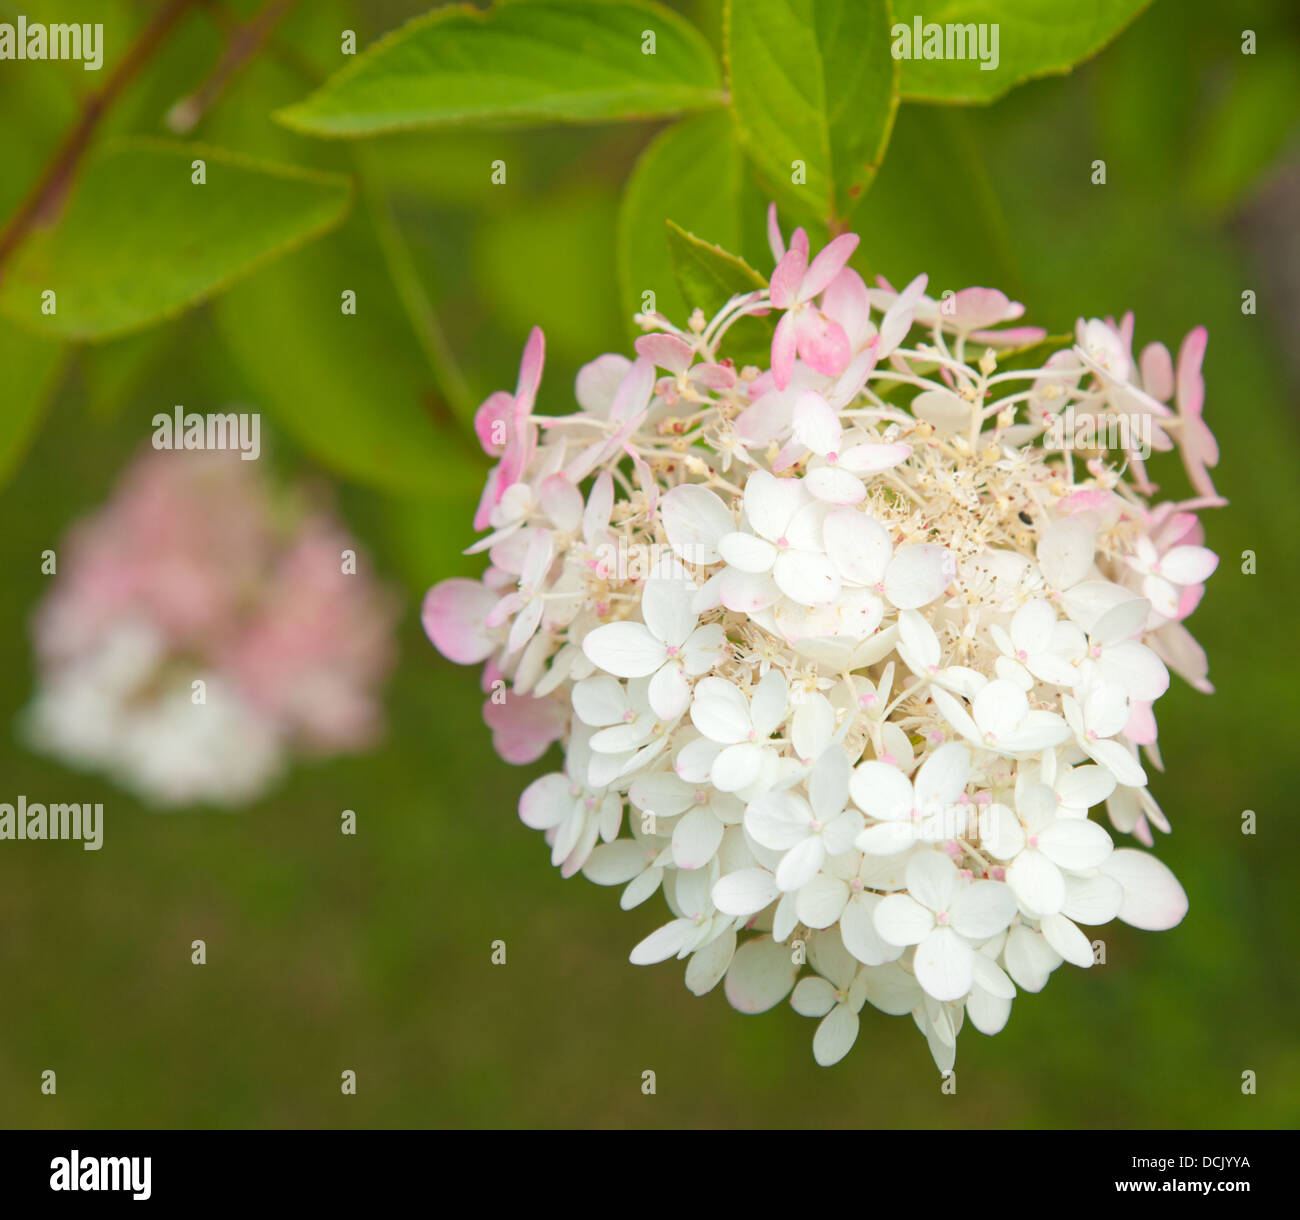 flowering pink and white Hydrangea paniculata Stock Photo